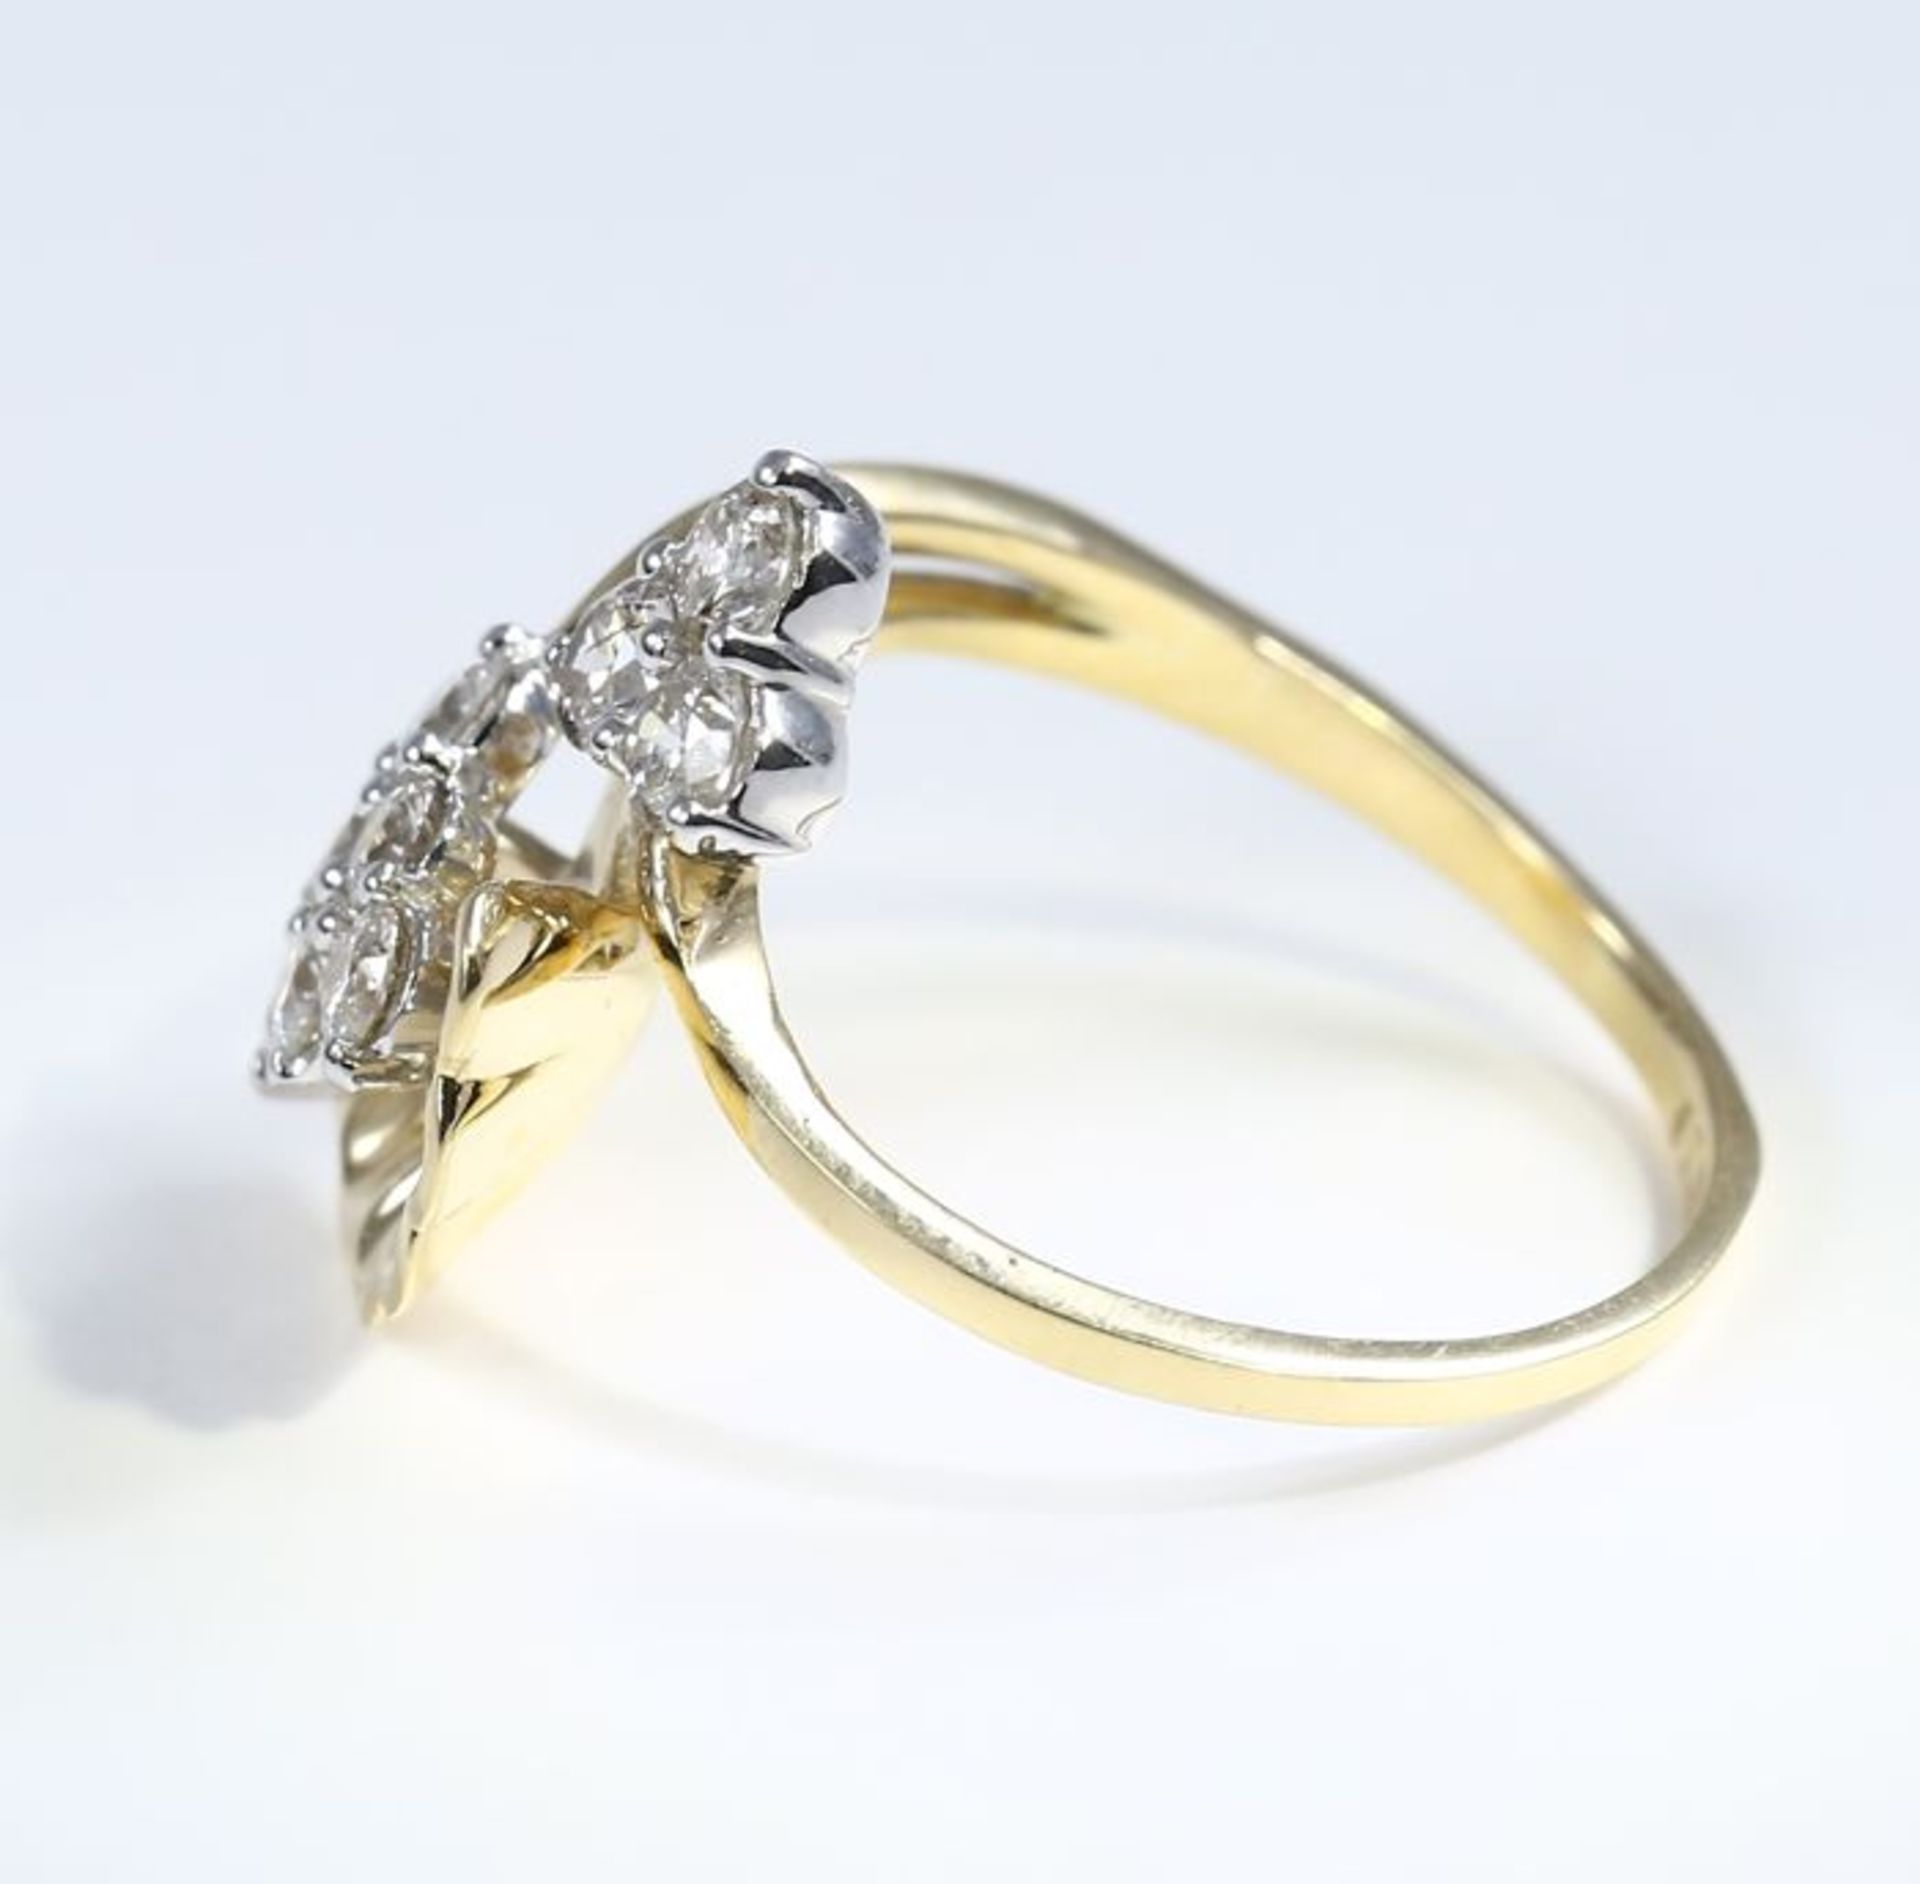 IGI certified 18 K / 750 Yellow gold Designer Diamond Ring - Image 8 of 9